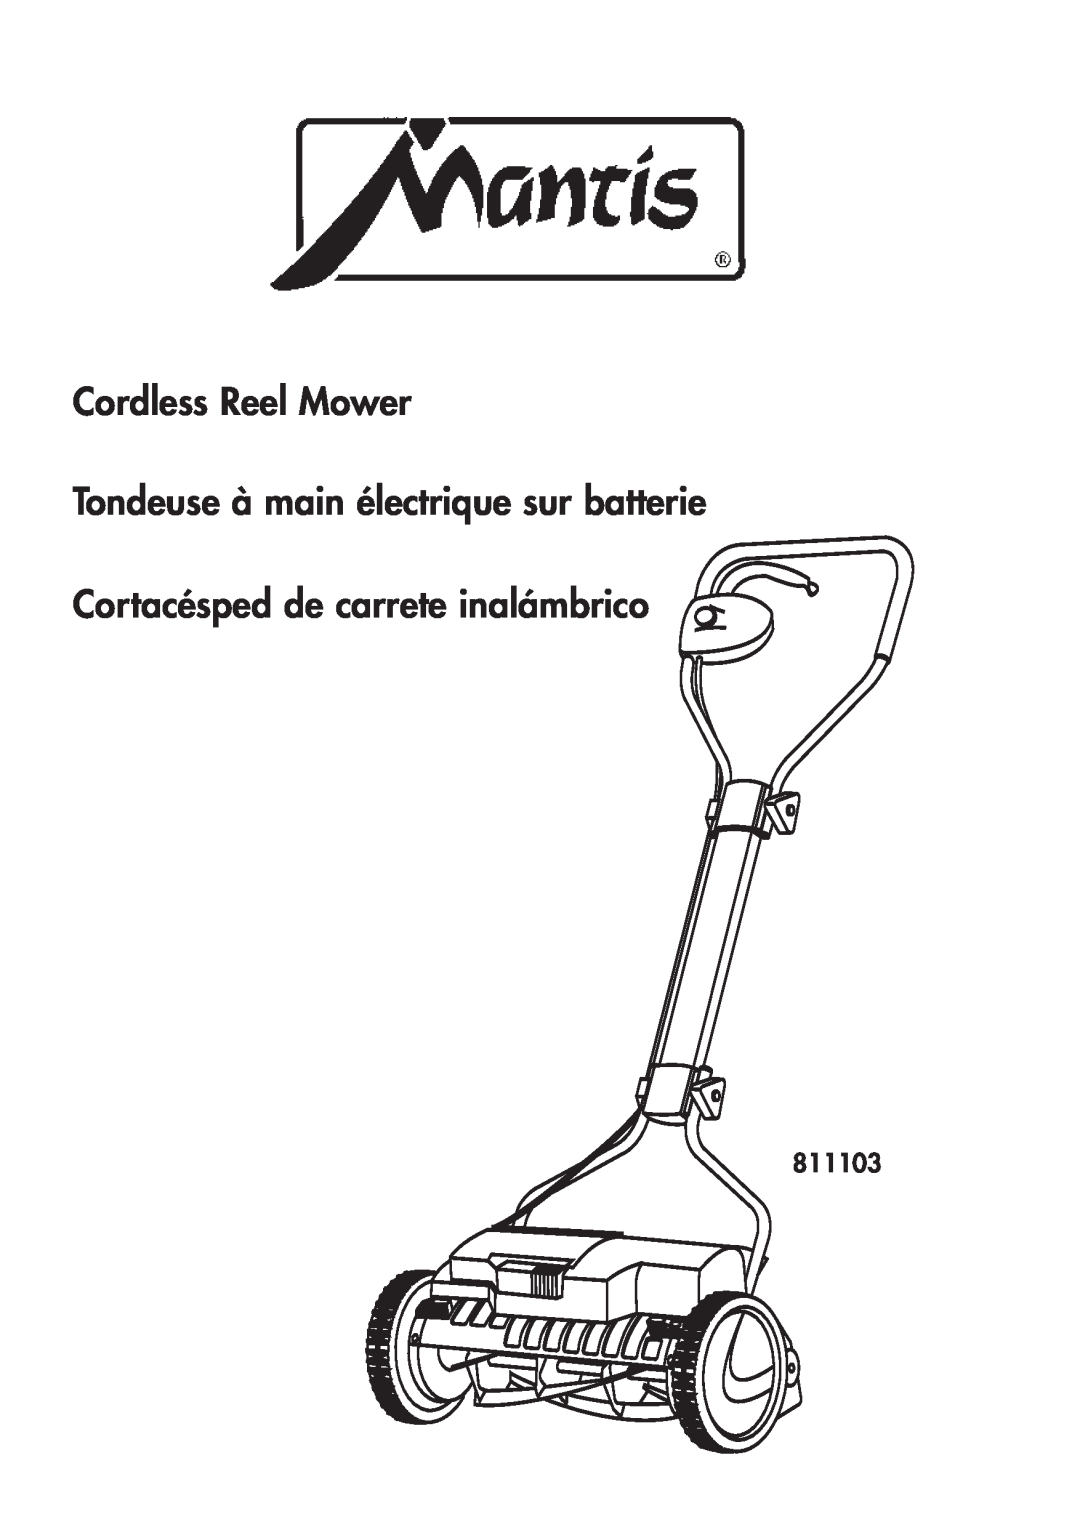 Mantis 811103 manual Cordless Reel Mower Tondeuse à main électrique sur batterie, Cortacésped de carrete inalámbrico 